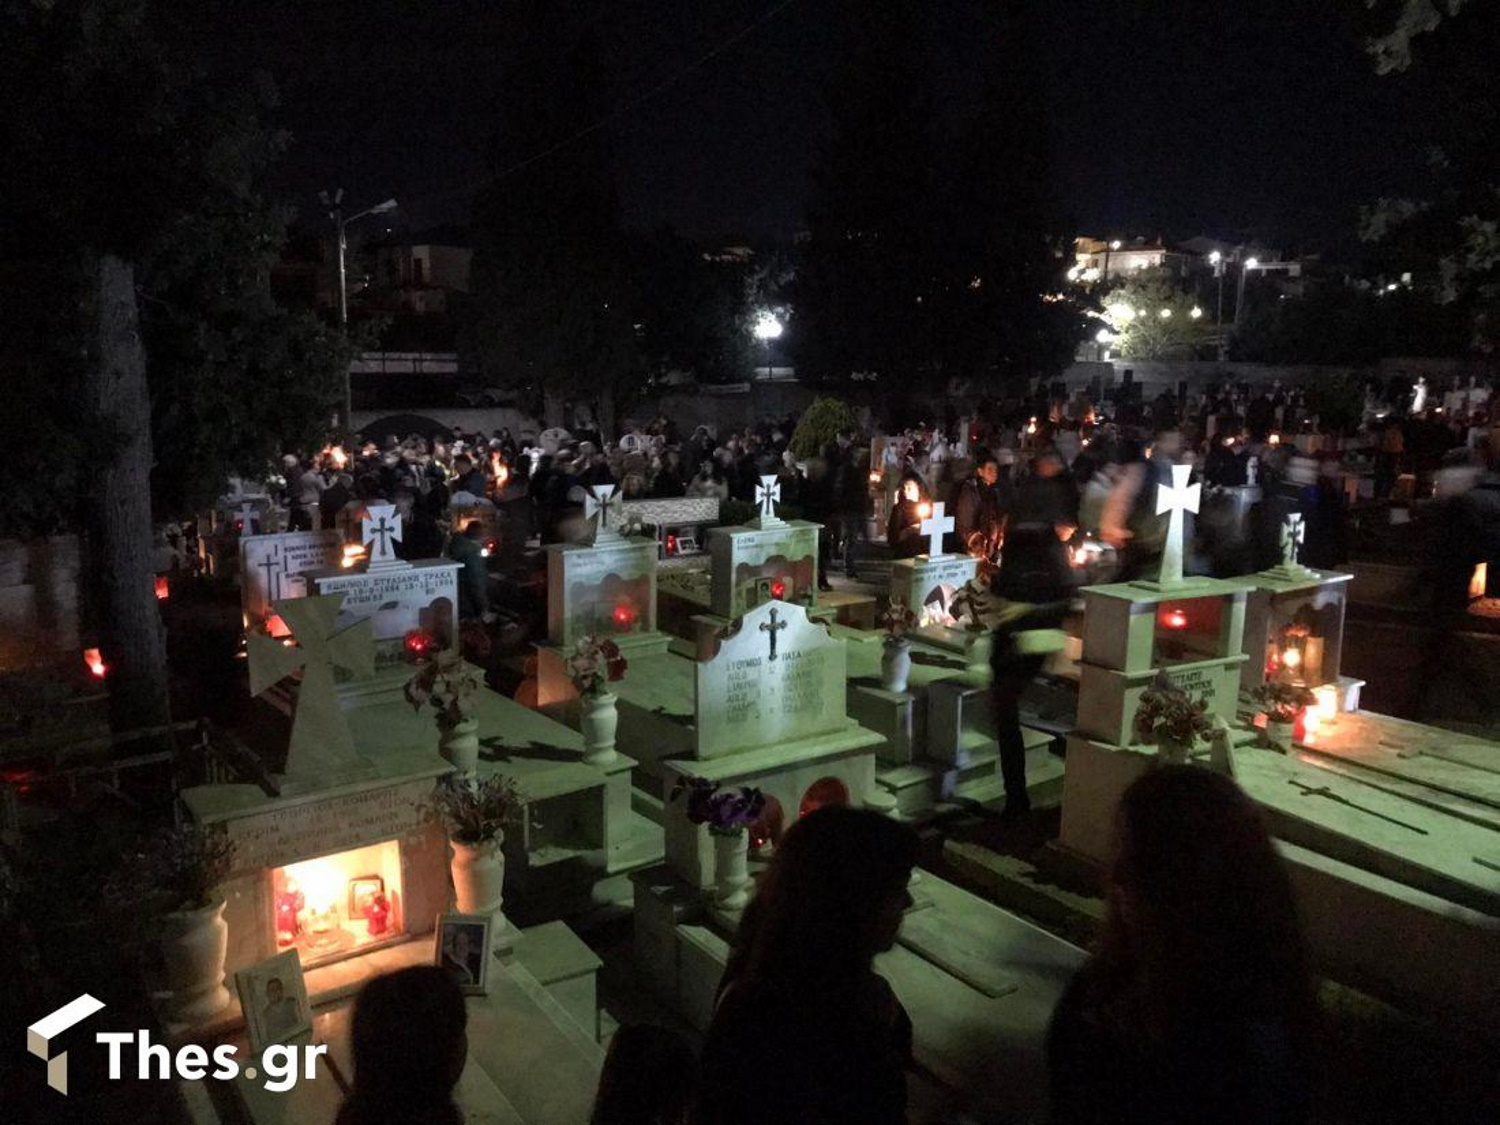 Θεσσαλονίκη: Συγκίνηση και κατάνυξη στη συνάντηση των Επιταφίων στο νεκροταφείο της Νέας Μεσημβρίας